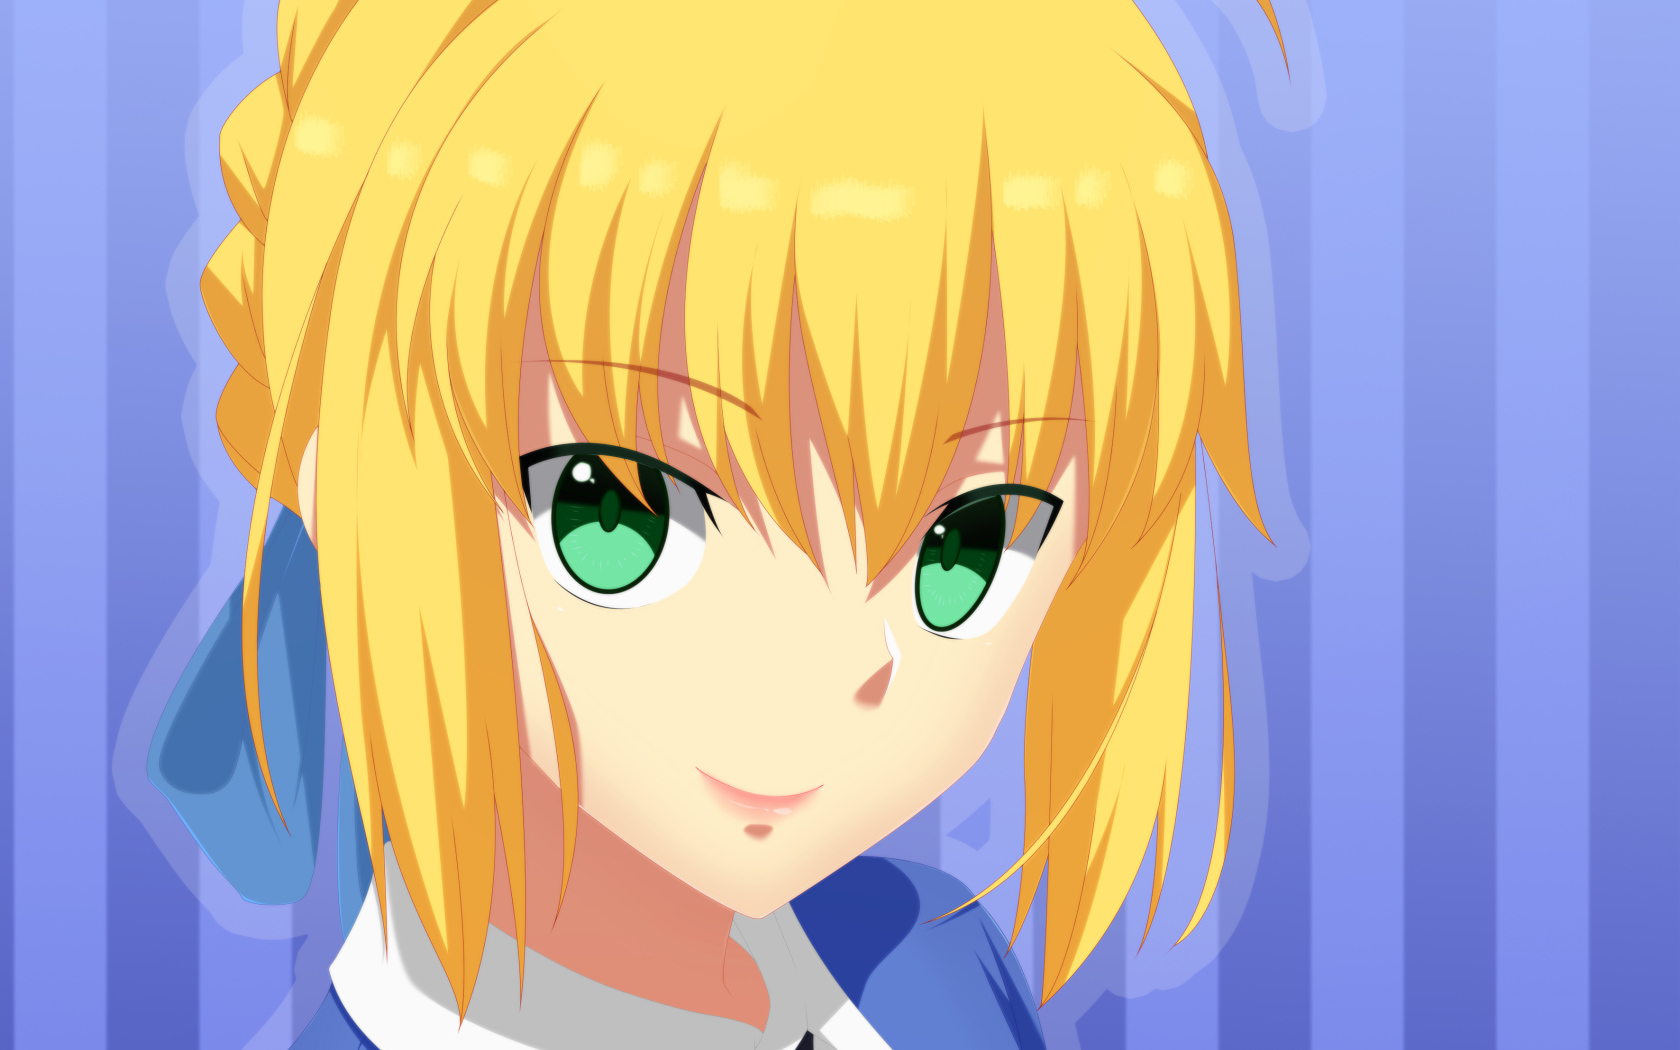 Лицо зеленоглазой девушки аниме с желтыми волосами